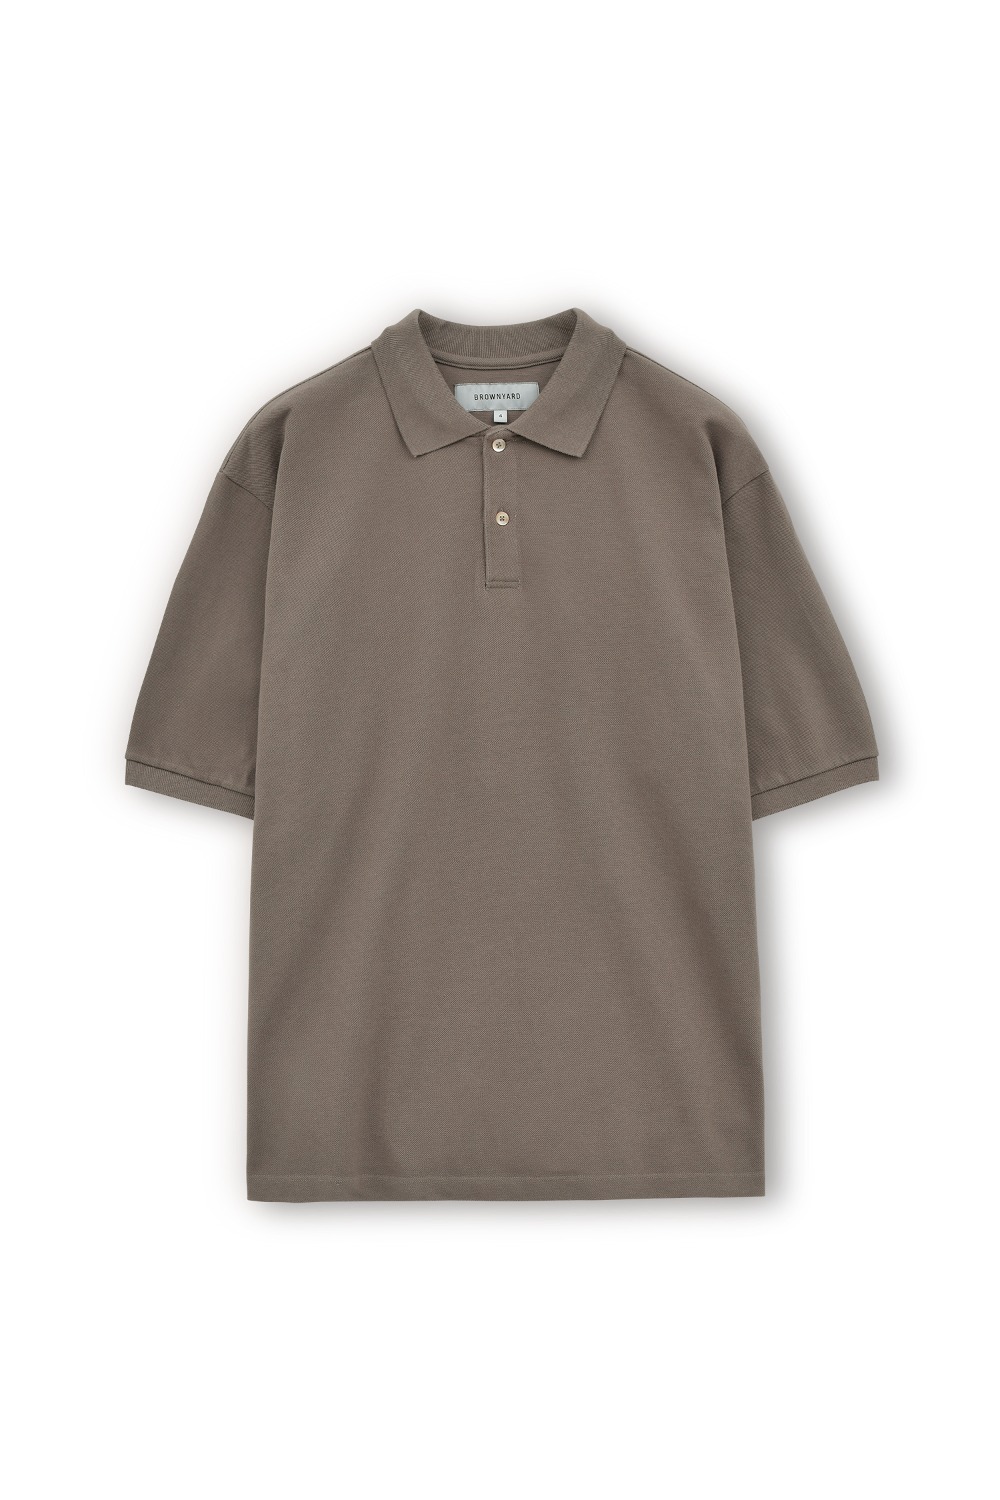 Cotton Pique Shirt-Brown